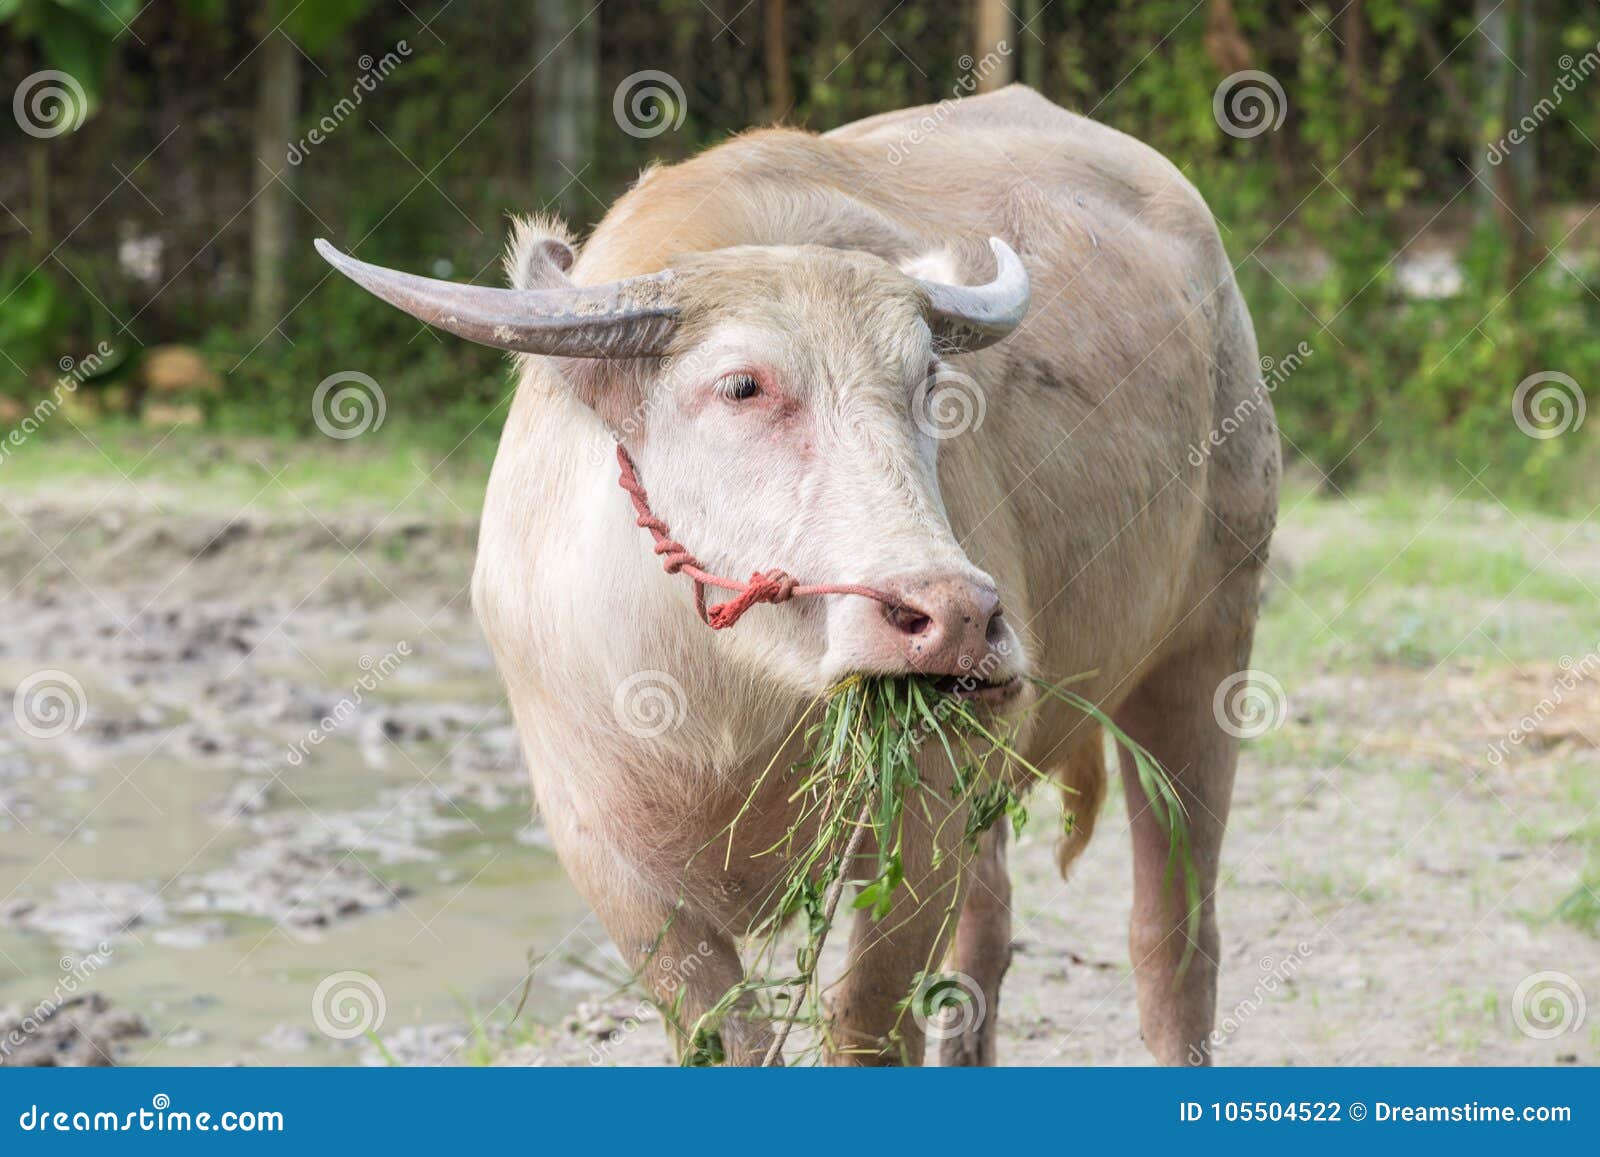 White Buffalo Eatting Grass. Close Up. Stock Photo - Image of field, change: